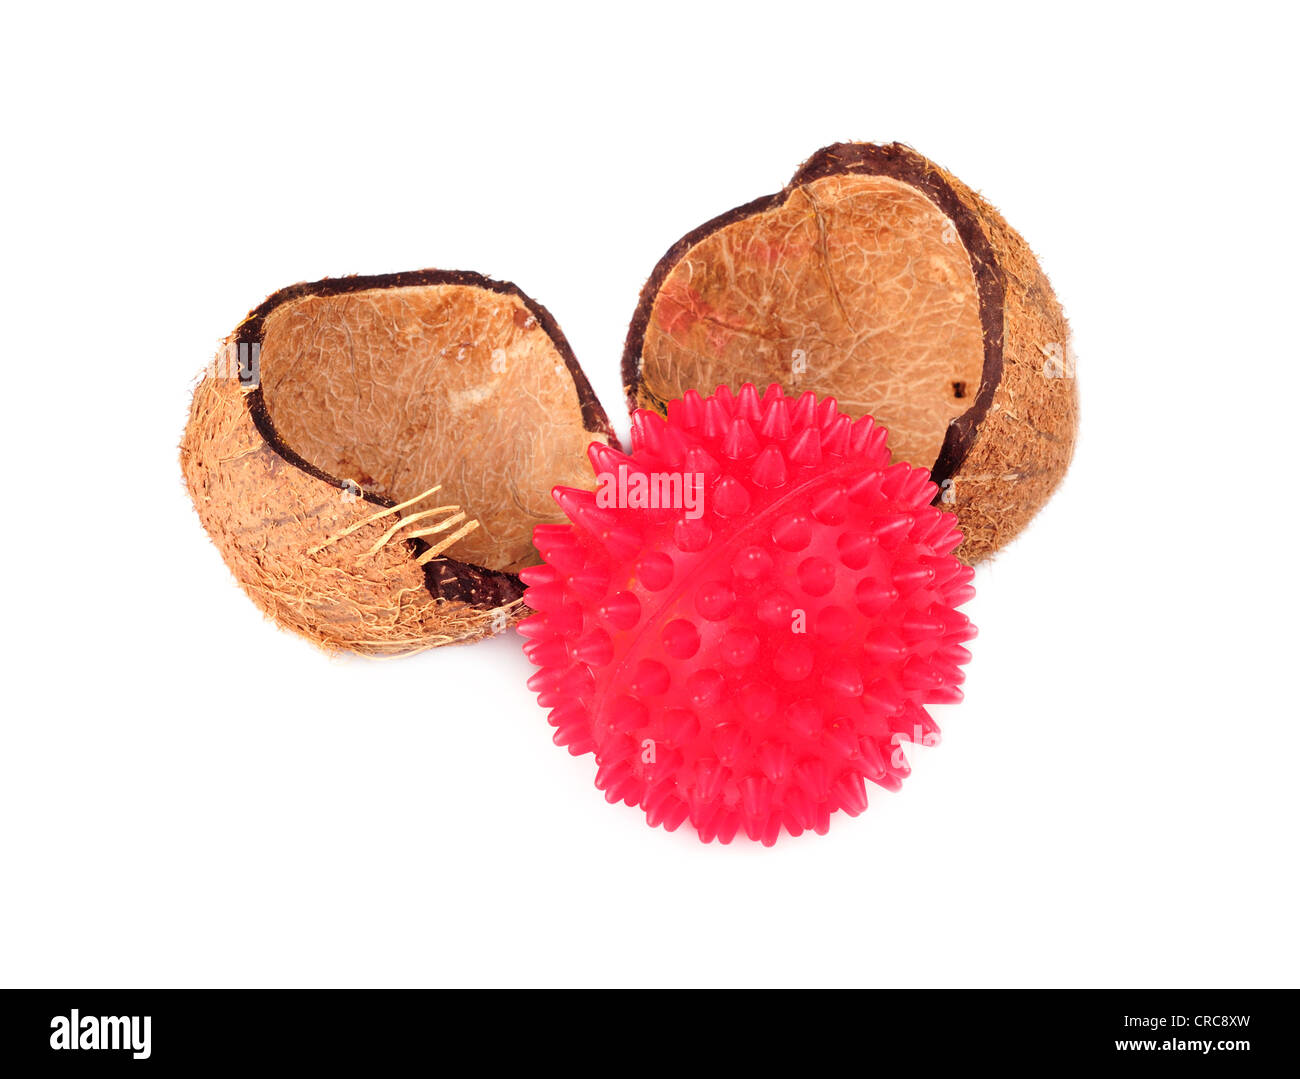 Gusci di noce di cocco con sfera rossa isolatet su un backround bianco Foto Stock